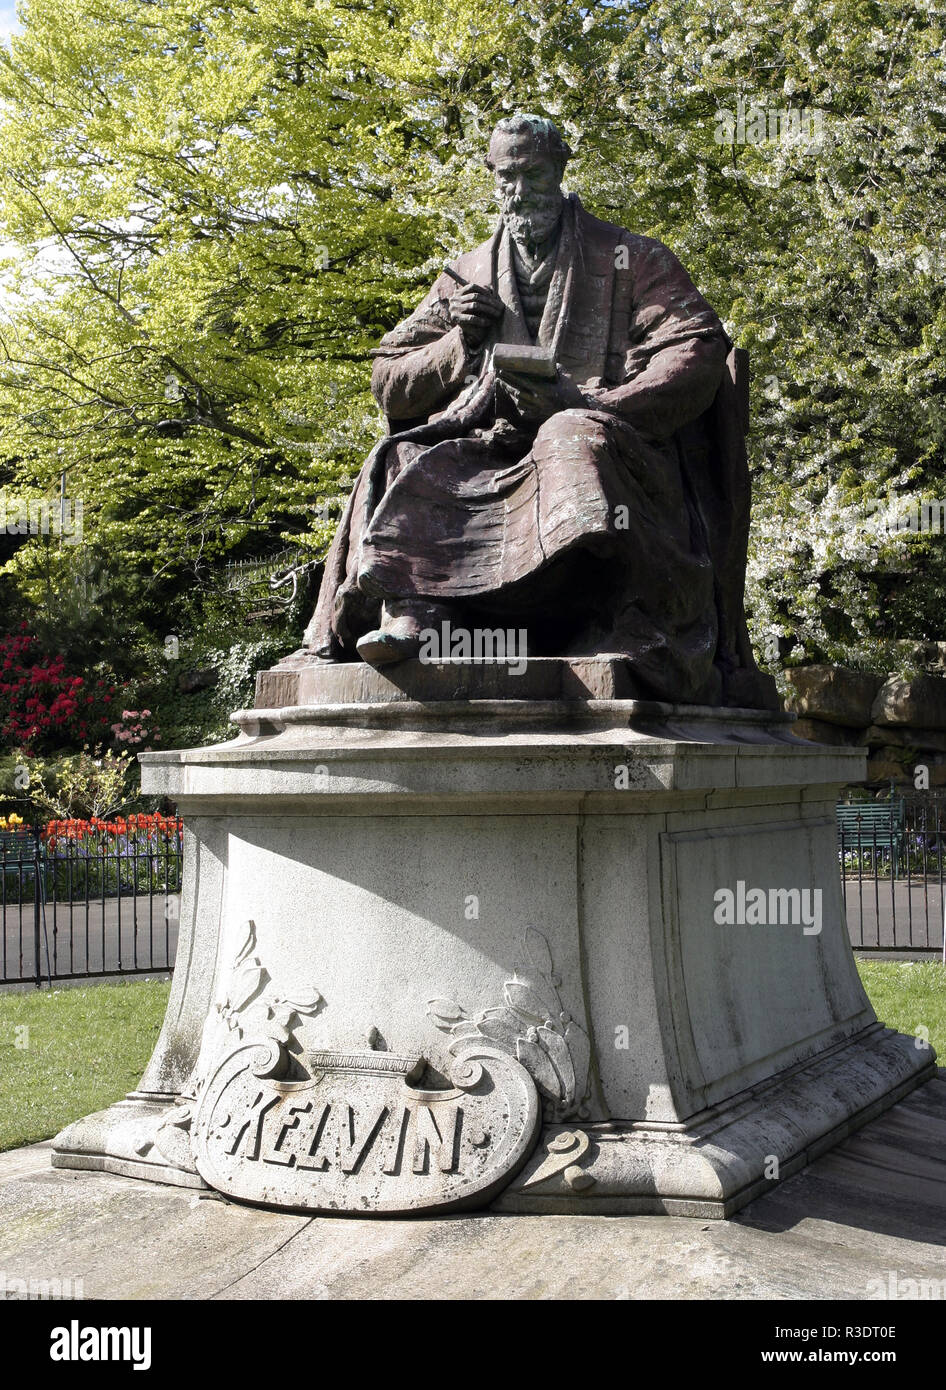 Diese Statue von Lord Kelvin (William Thomson), der eine mathematische Physiker und Ingenieur und ist am besten für die Entwicklung der absoluten Temperatur Skala bekannt. Die Statue befindet sich in der Kelvingrove Park am Ufer des Flusses Kelvin in Glasgow. Stockfoto